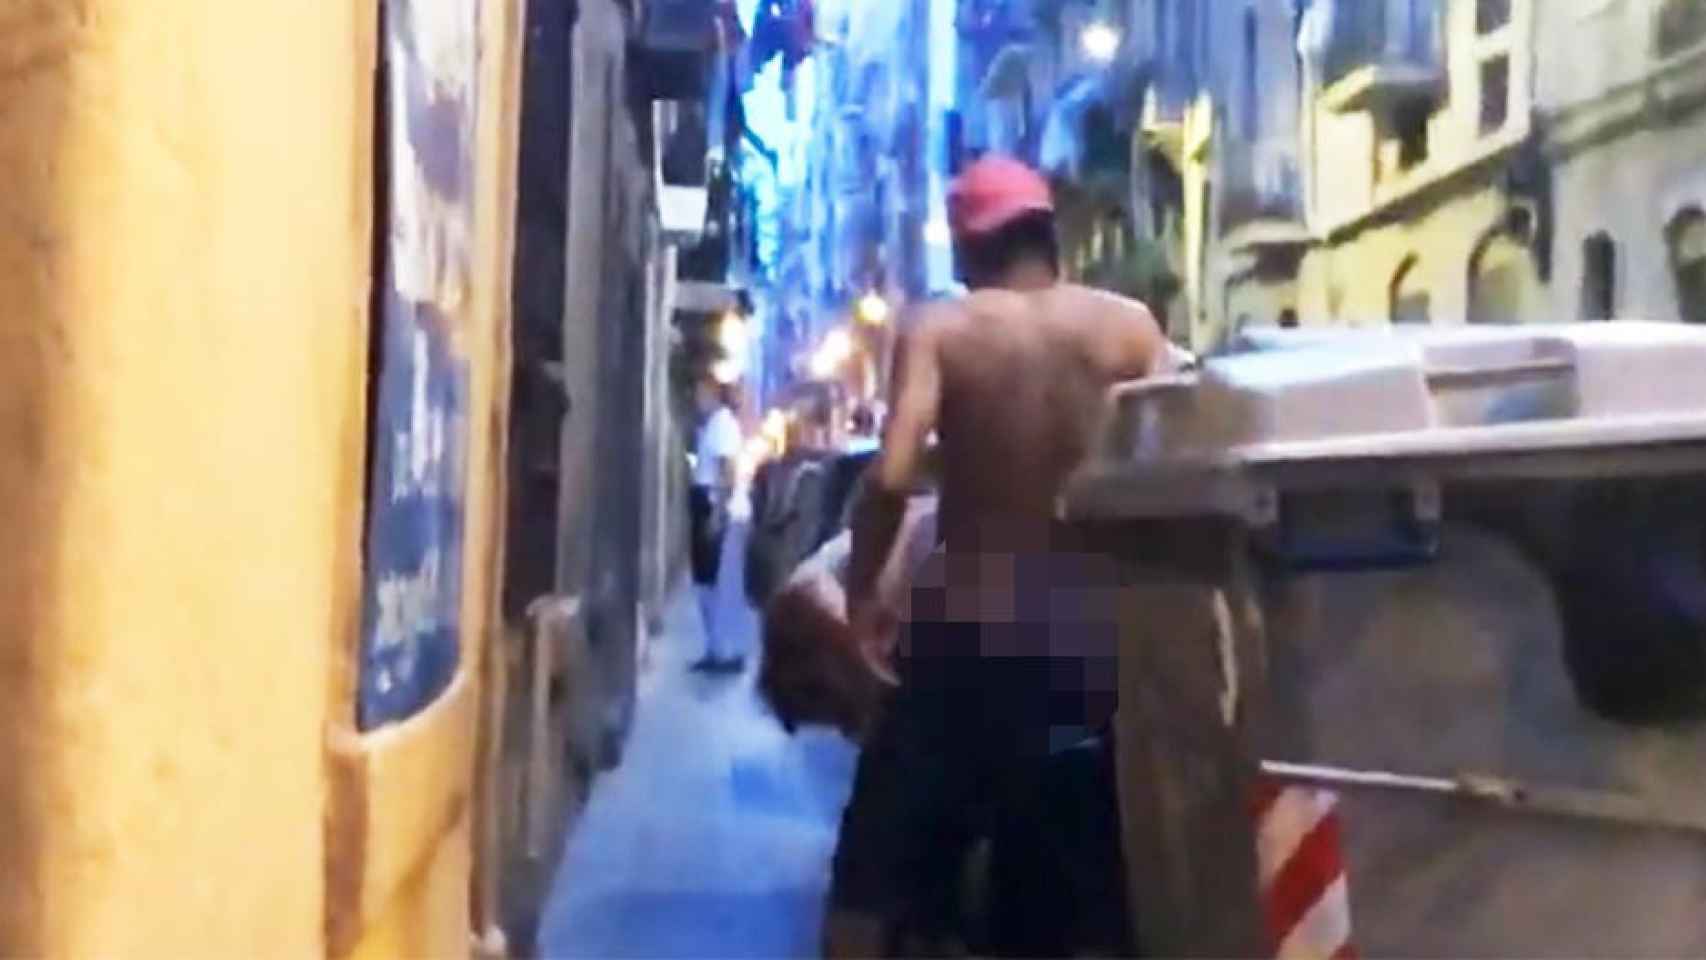 Dos vecinos mantienen relaciones íntimas en plena calle en el barrio de Barceloneta de Barcelona / CG